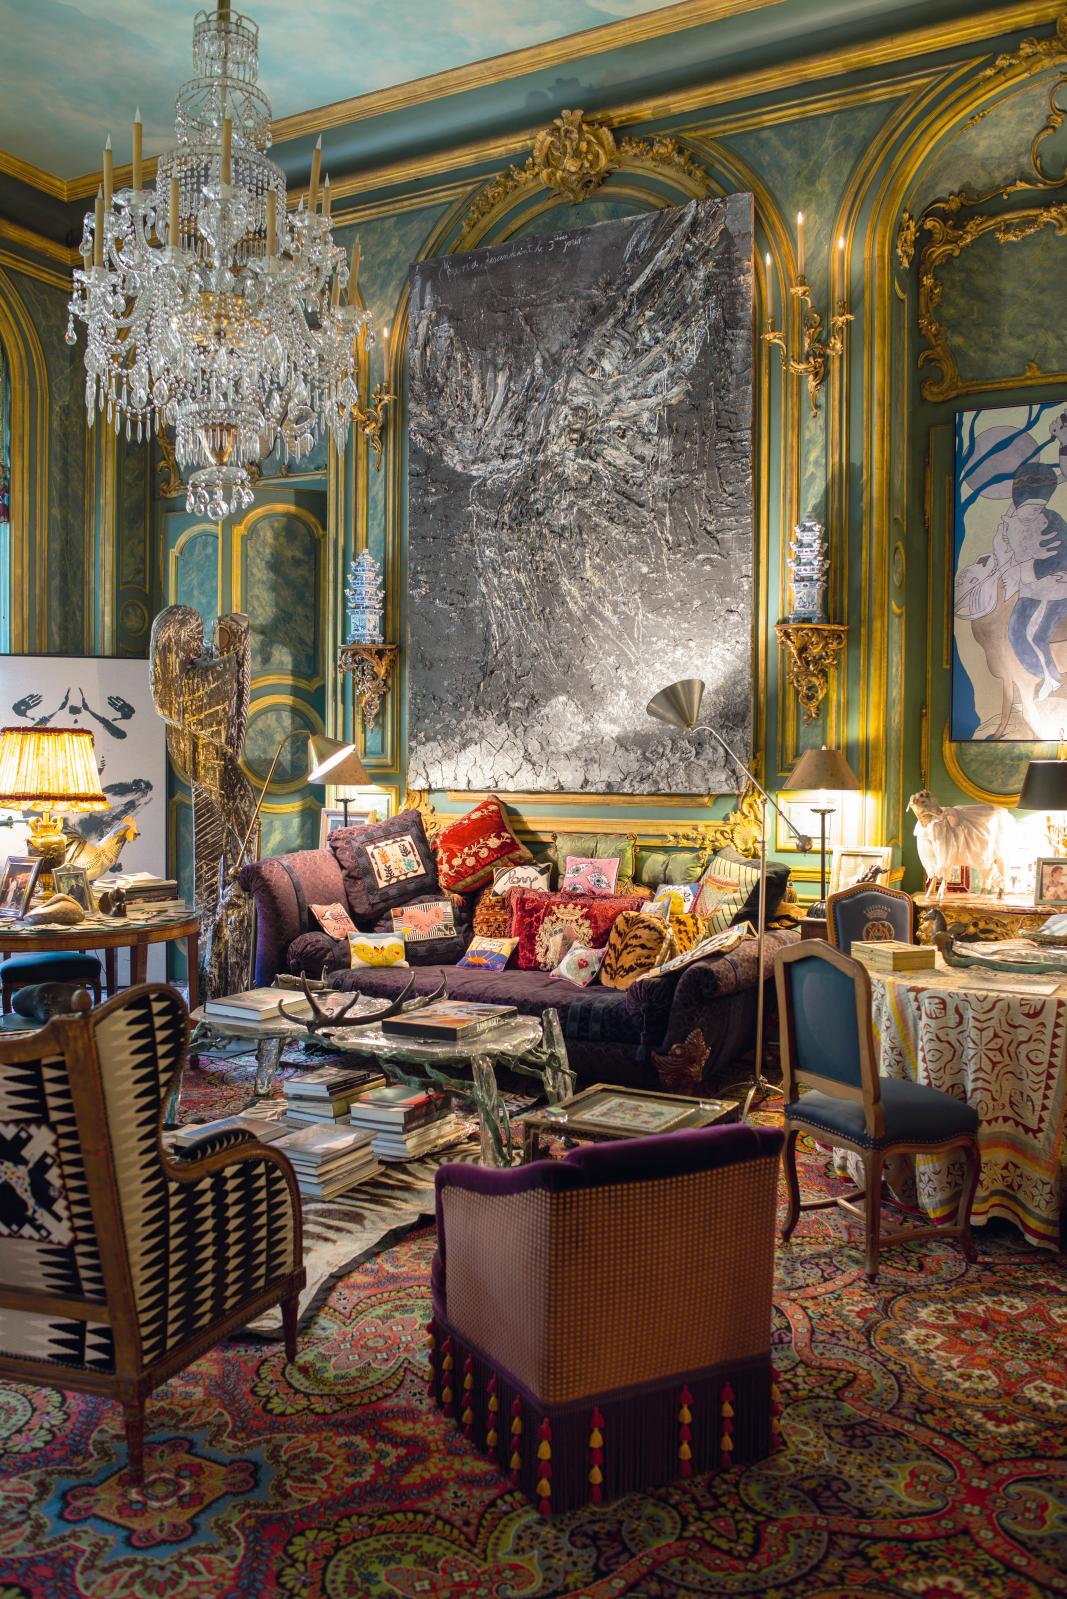 Dans le salon de l'appartement parisien, une toile d'Anselm Kiefer, Maria descendant le 3e jour. © Photo Christina Vervitsioti-Missoffe 